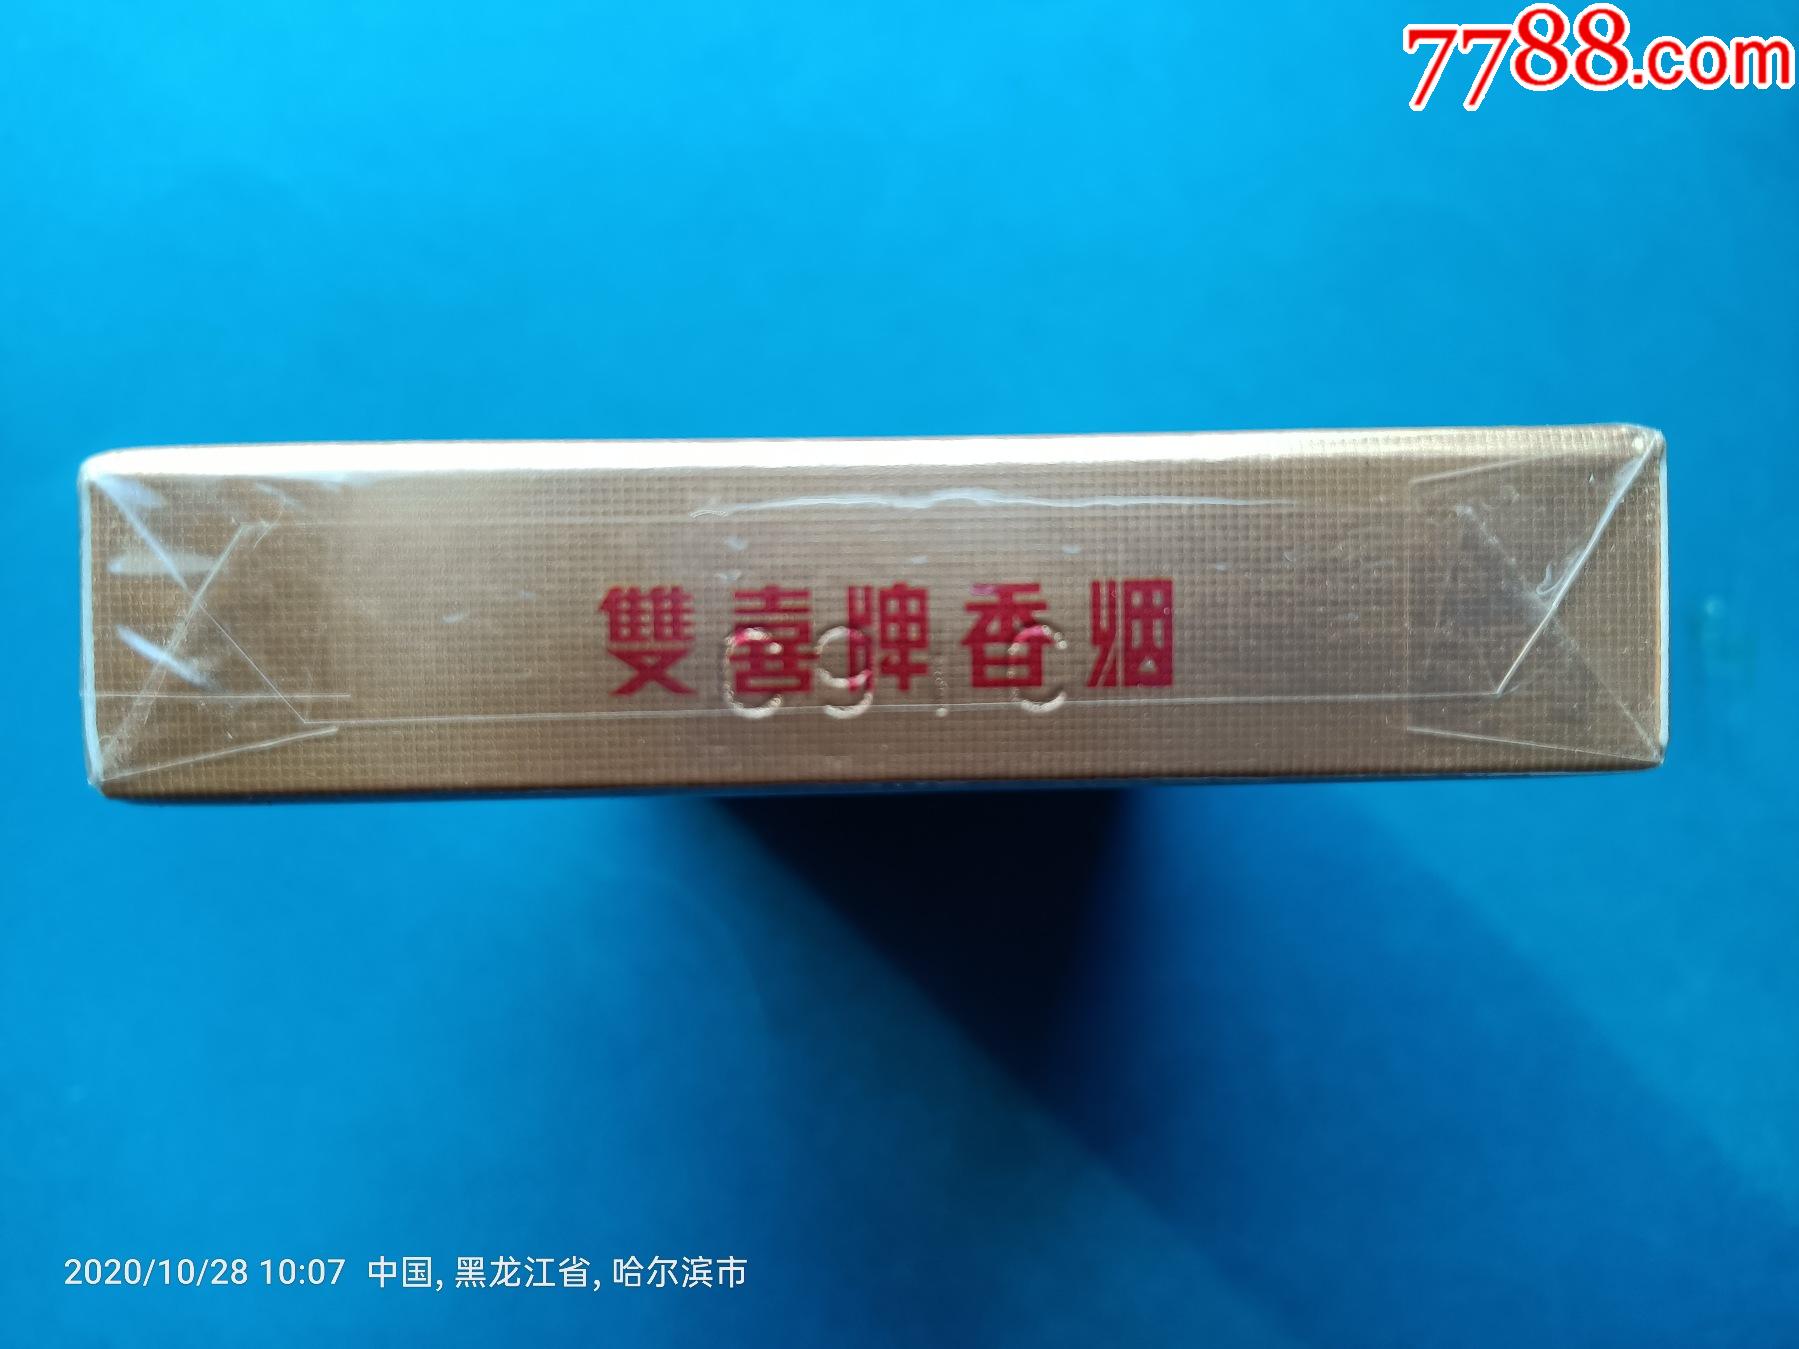 烟标:双喜牌香烟·花悦,焦8,广东中烟工业有限责任公司出品.